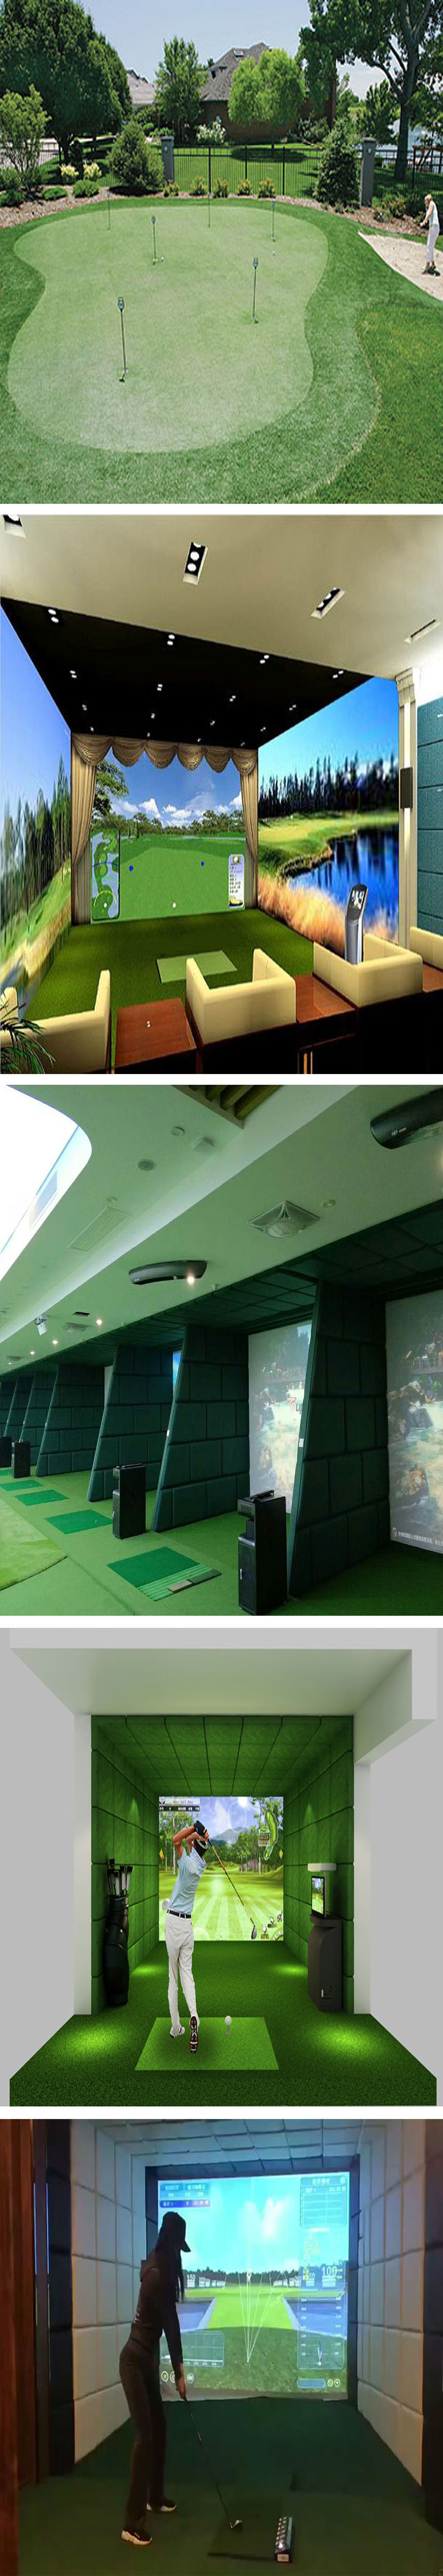 室内模拟高尔夫球场尺寸03.jpg